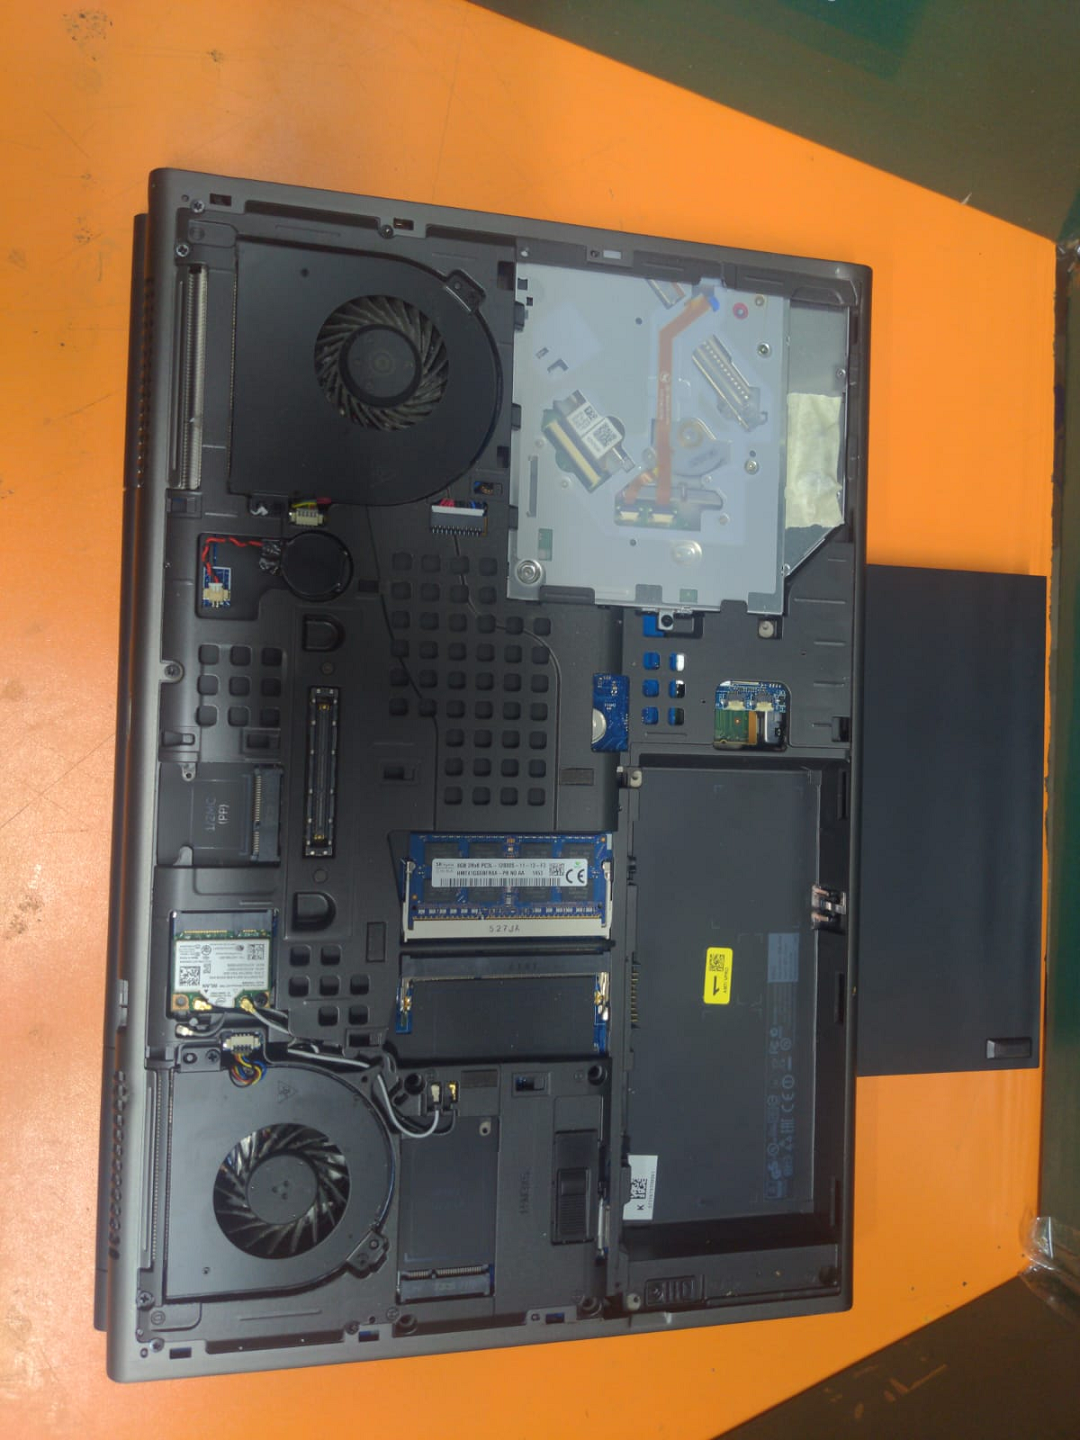 Dell Precision M4800 core i7 4th Generation Laptop Price in pakistan